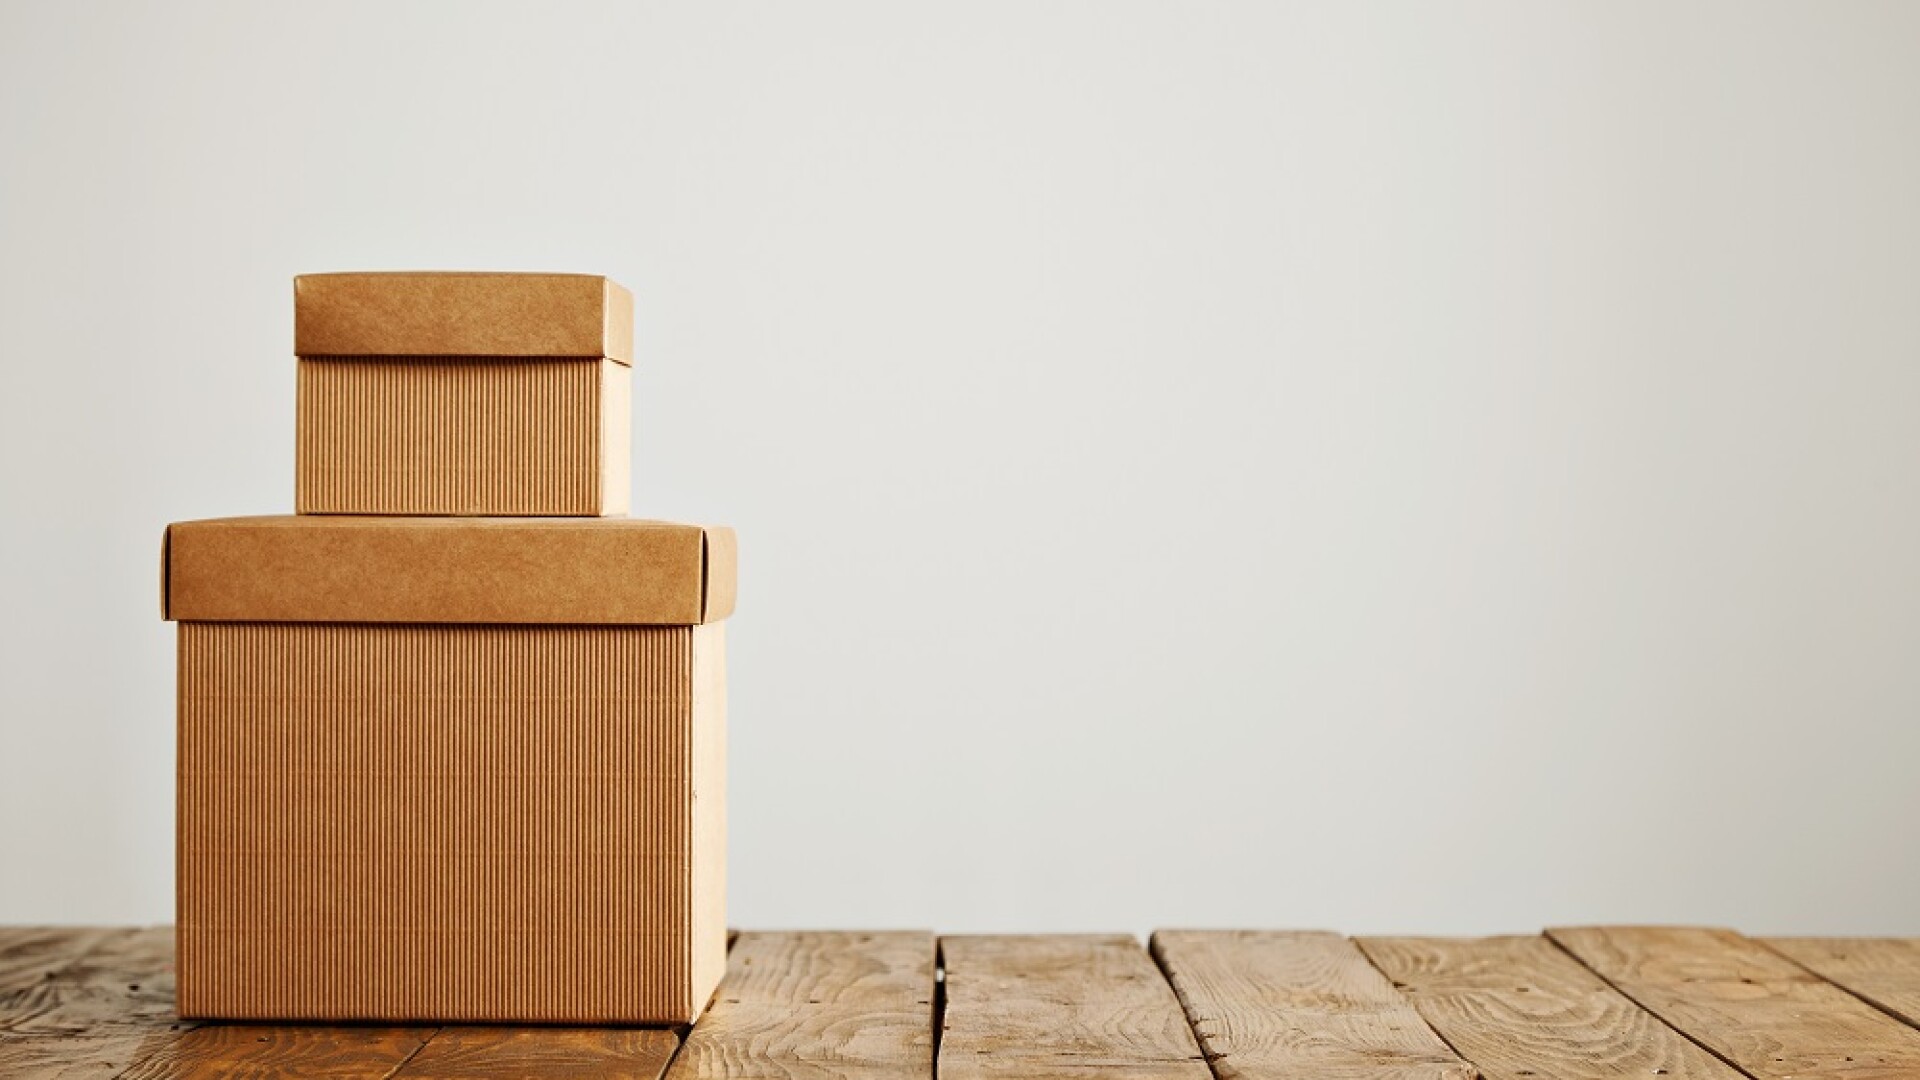 (P) Ai nevoie de cutii de carton în mod urgent pentru afacerea ta? Plasează o comanda la ROGRI și îți vor fi livrate imediat